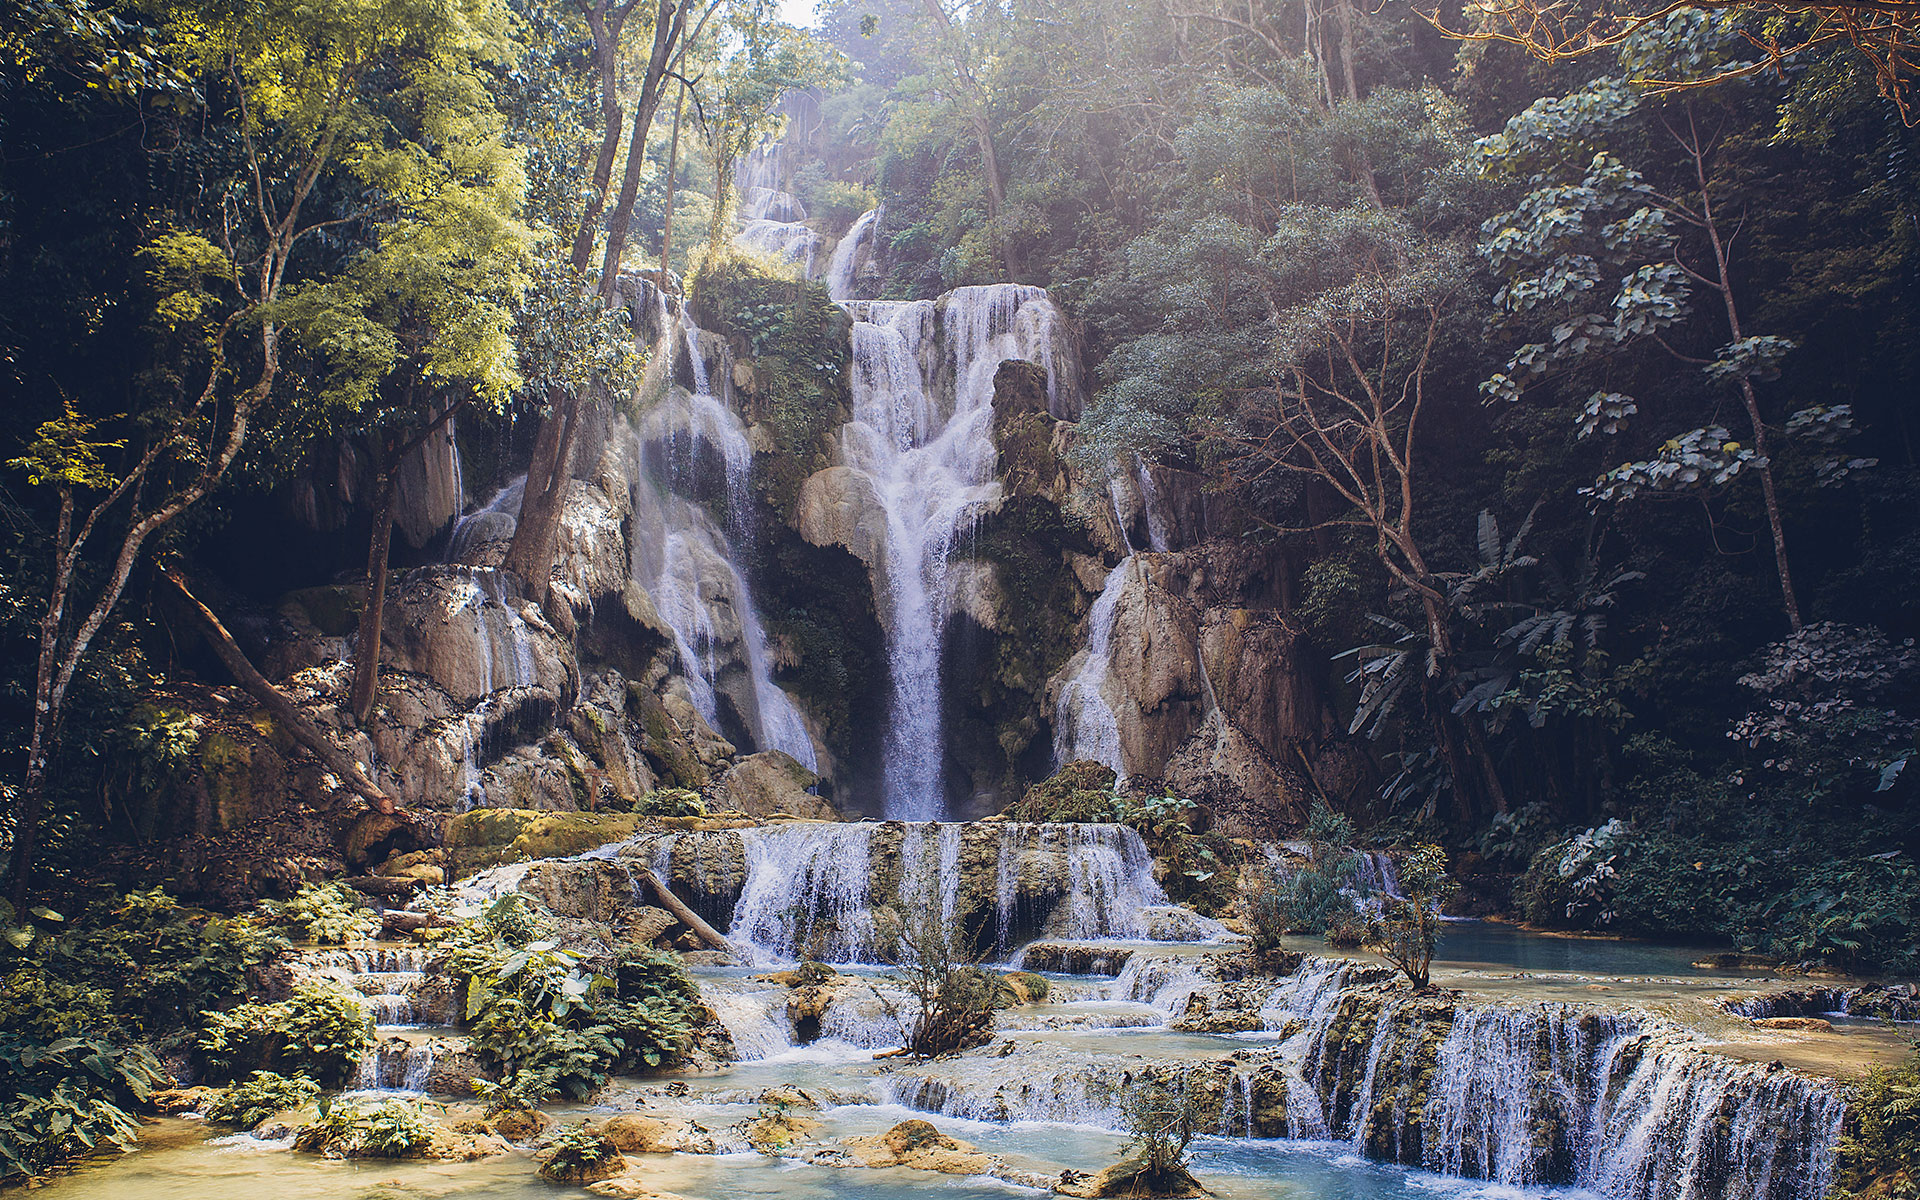 Tat Kuang Si Waterfall in dry season